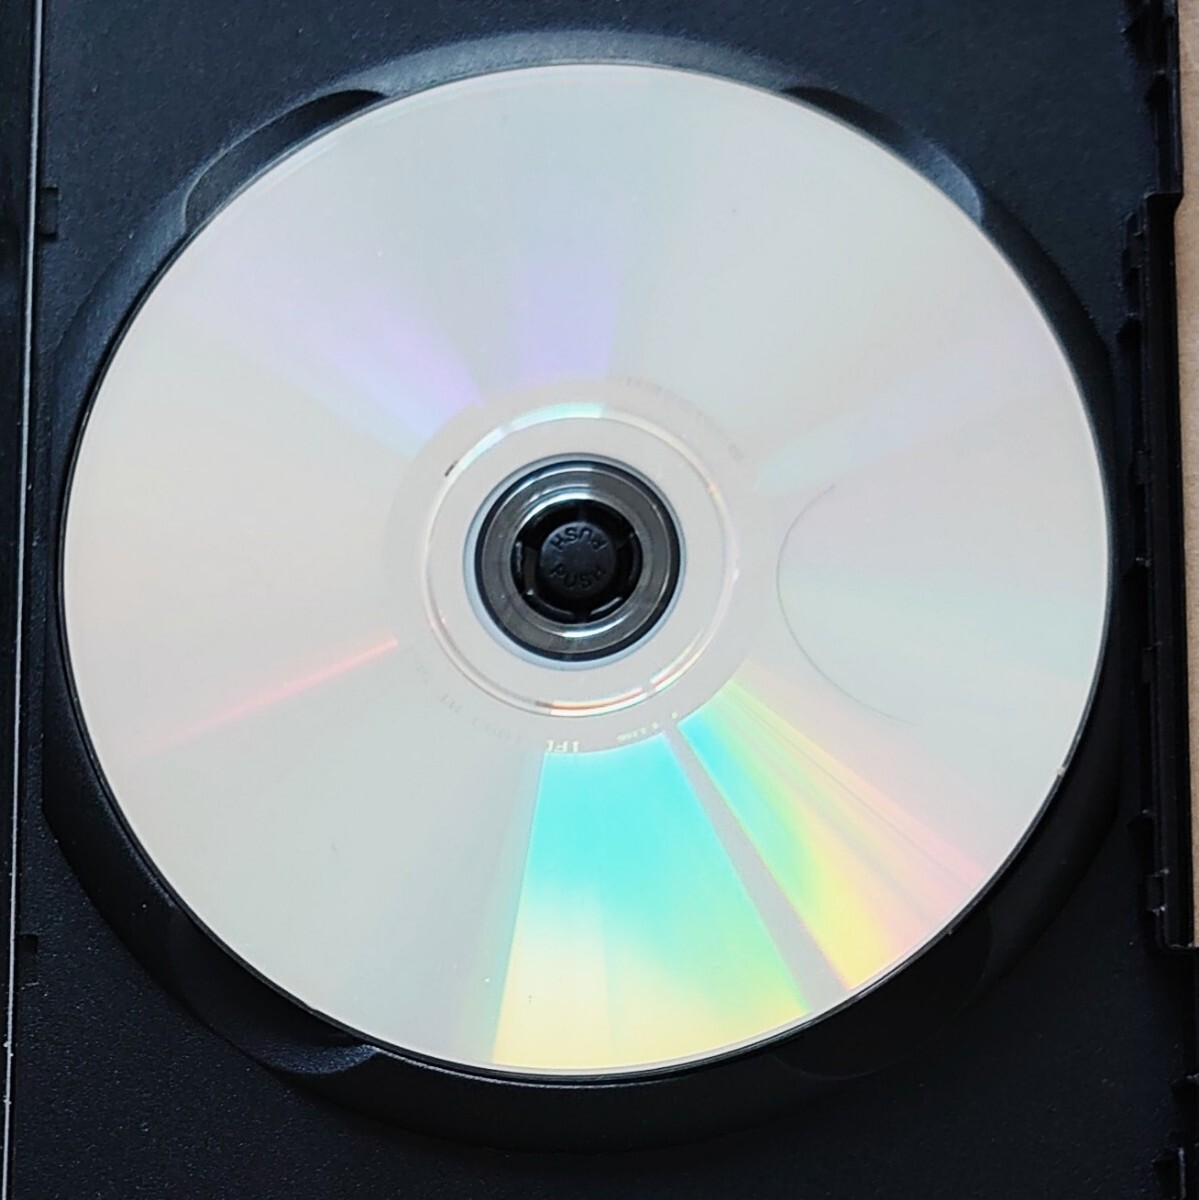 21ブリッジ チャドウィツク・ボーズマン シエナ・ミラー DVD レンタル落ち 中古品